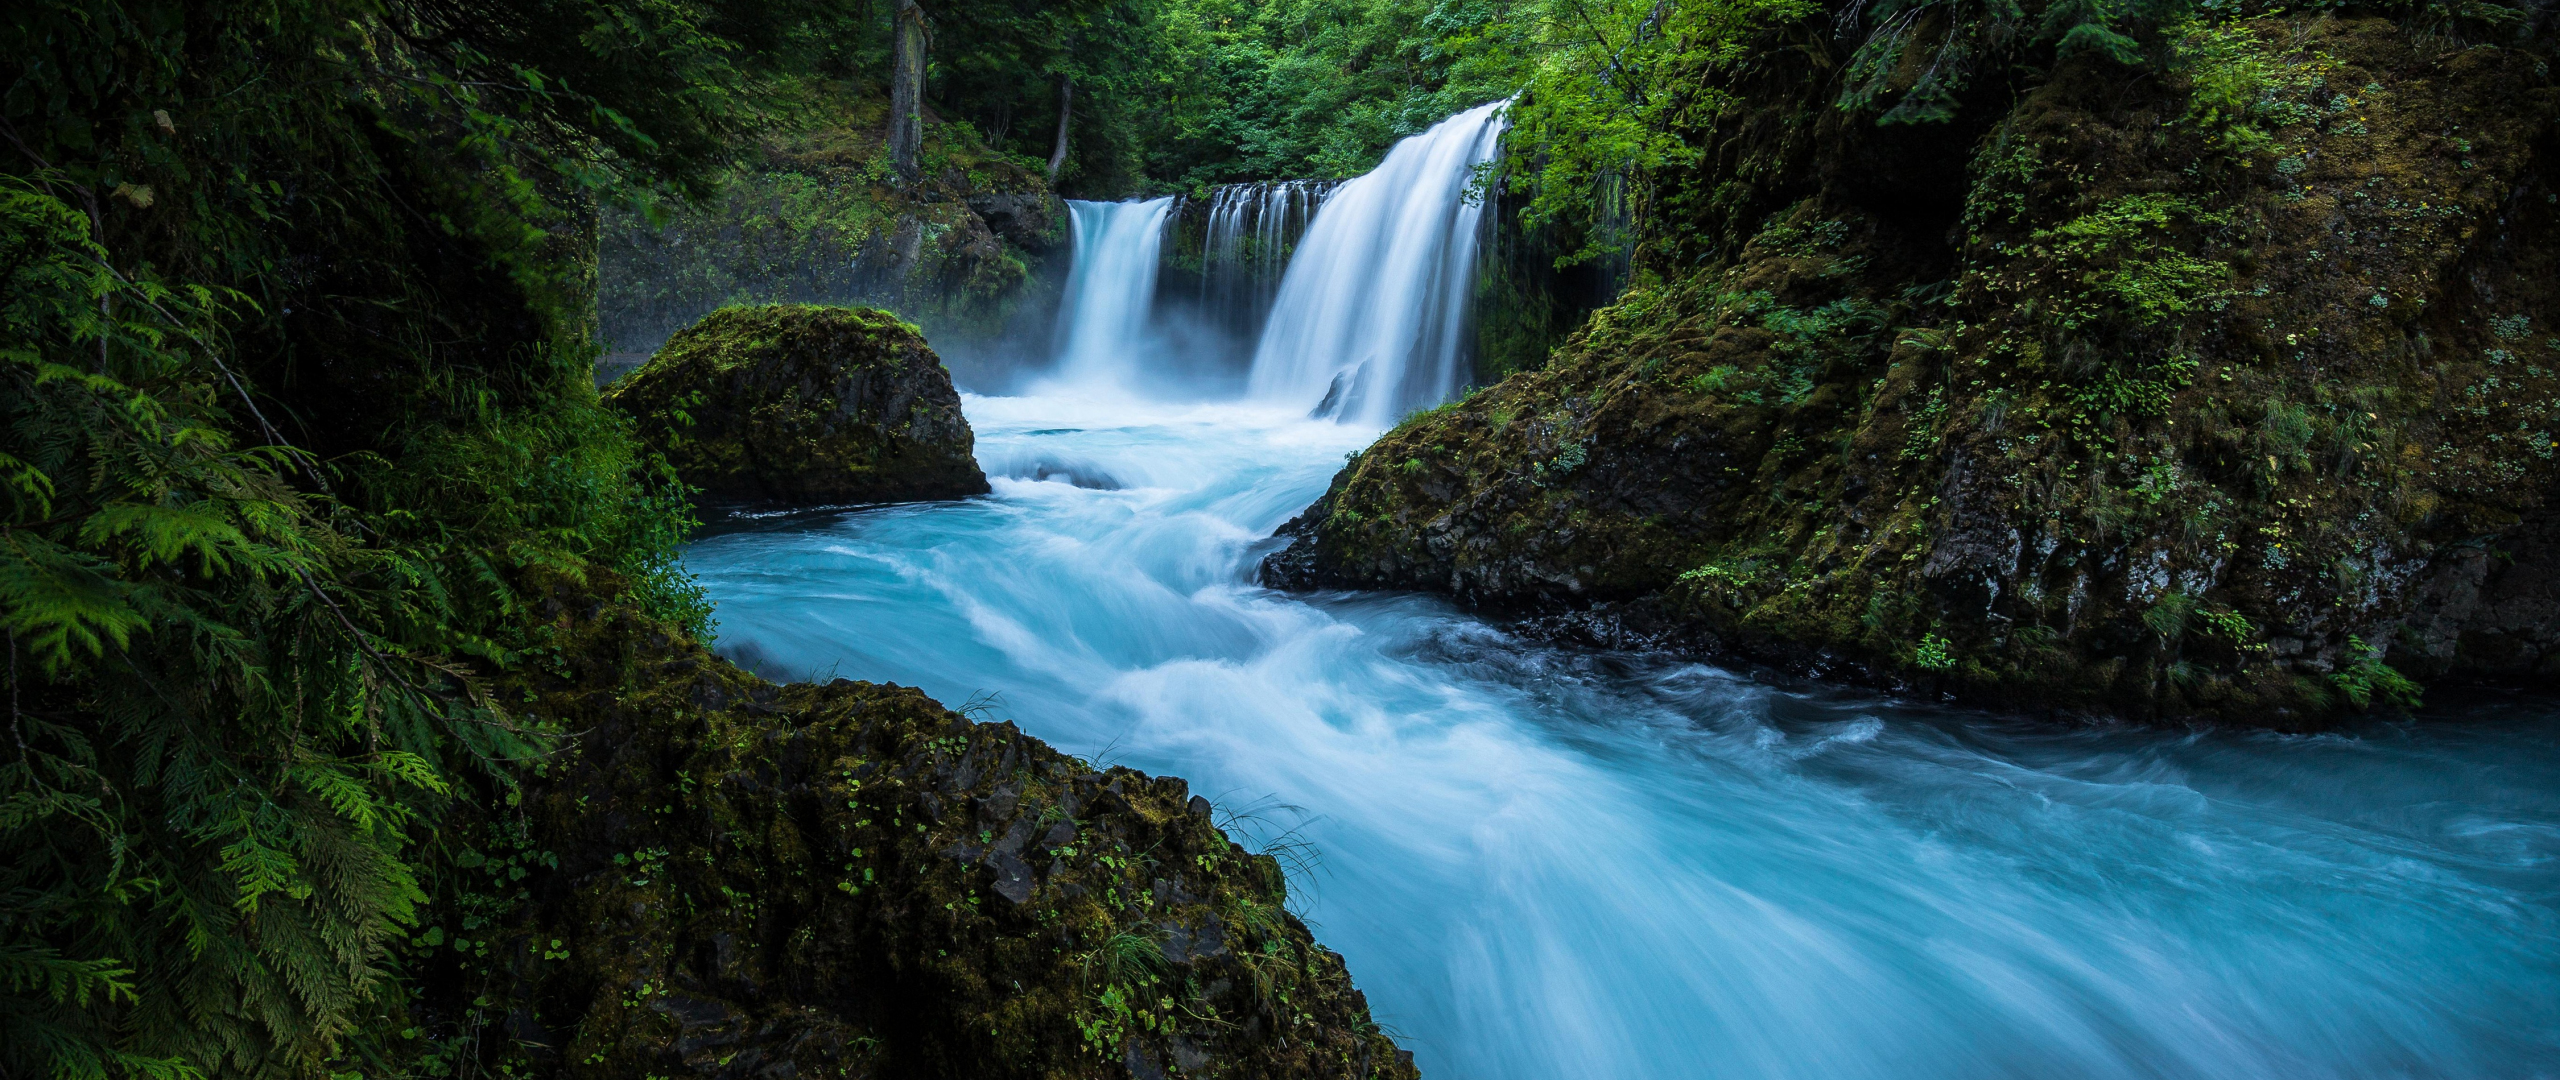 Видео про обои. Красивые водопады. Река с водопадом. Живая природа водопады. Обои водопад.